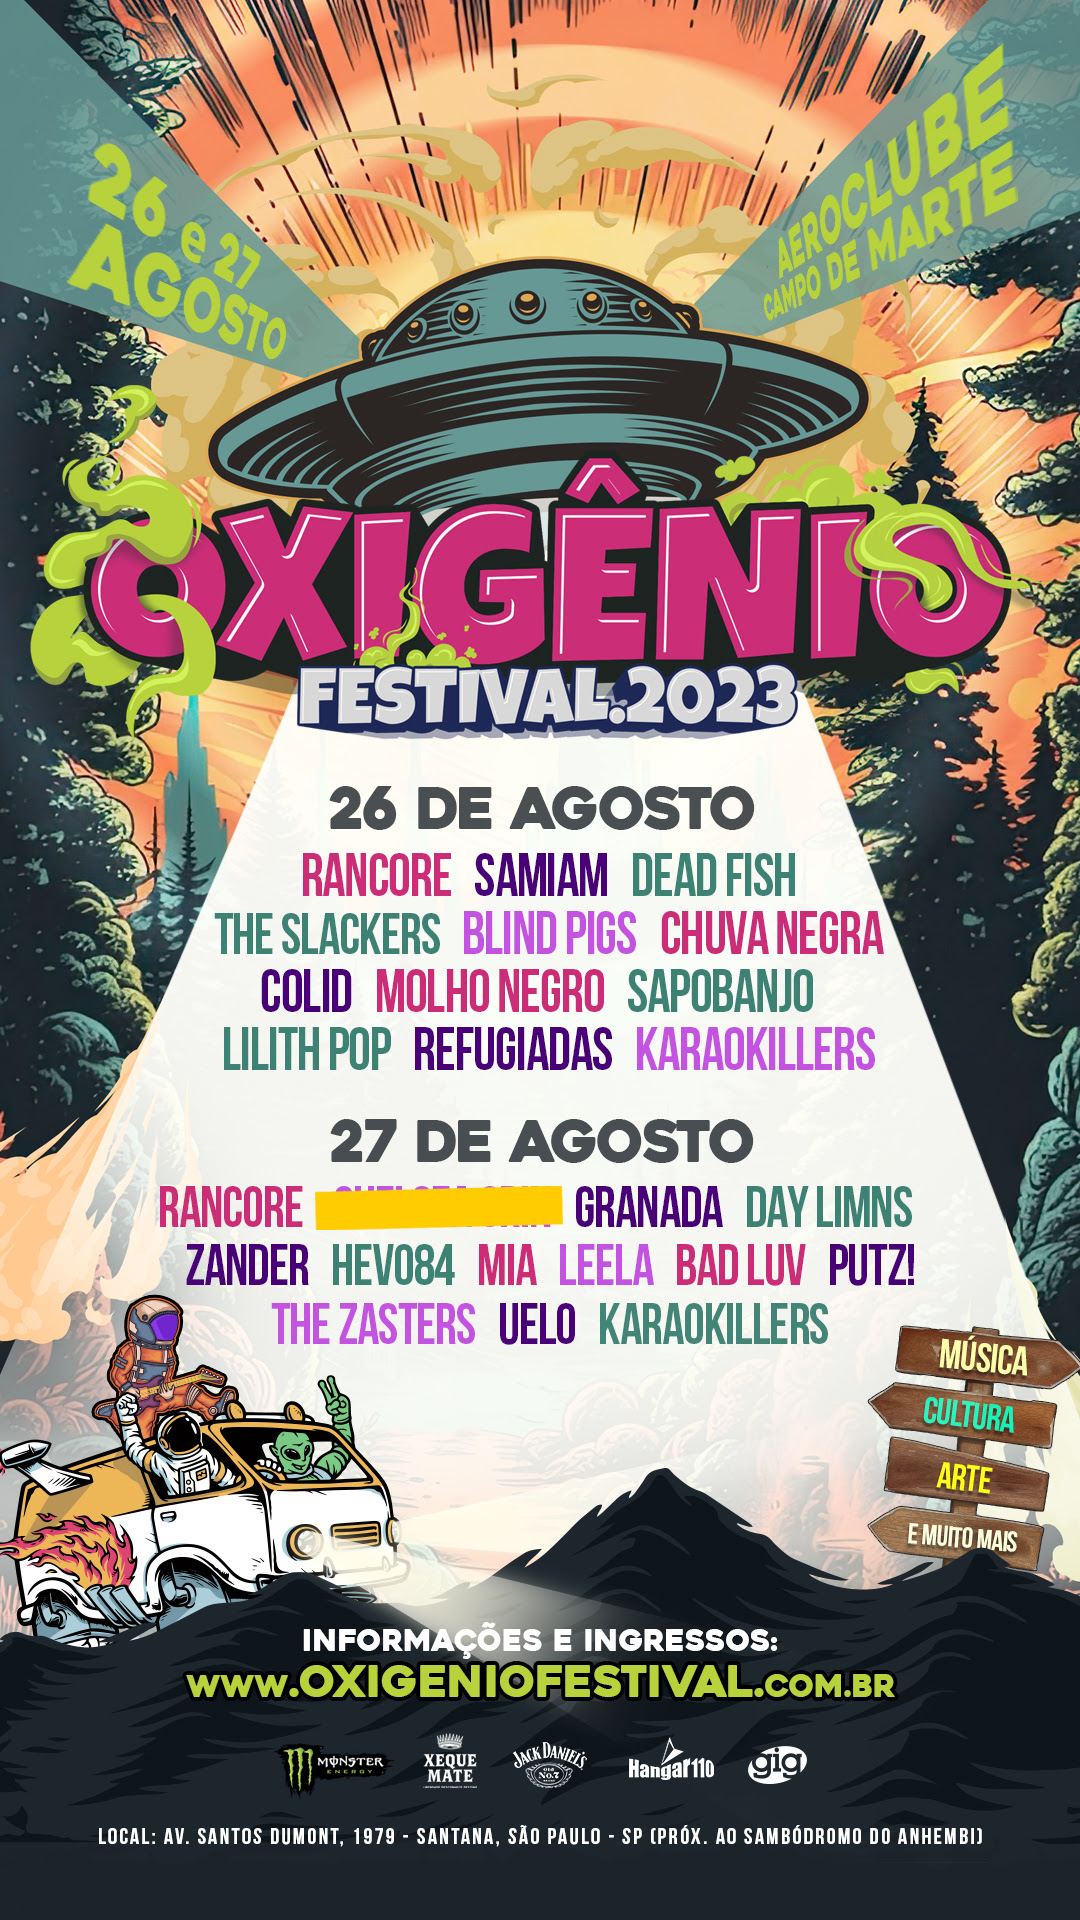 Oxigênio Festival 2023 acontece em agosto com bandas nacionais e internacionais